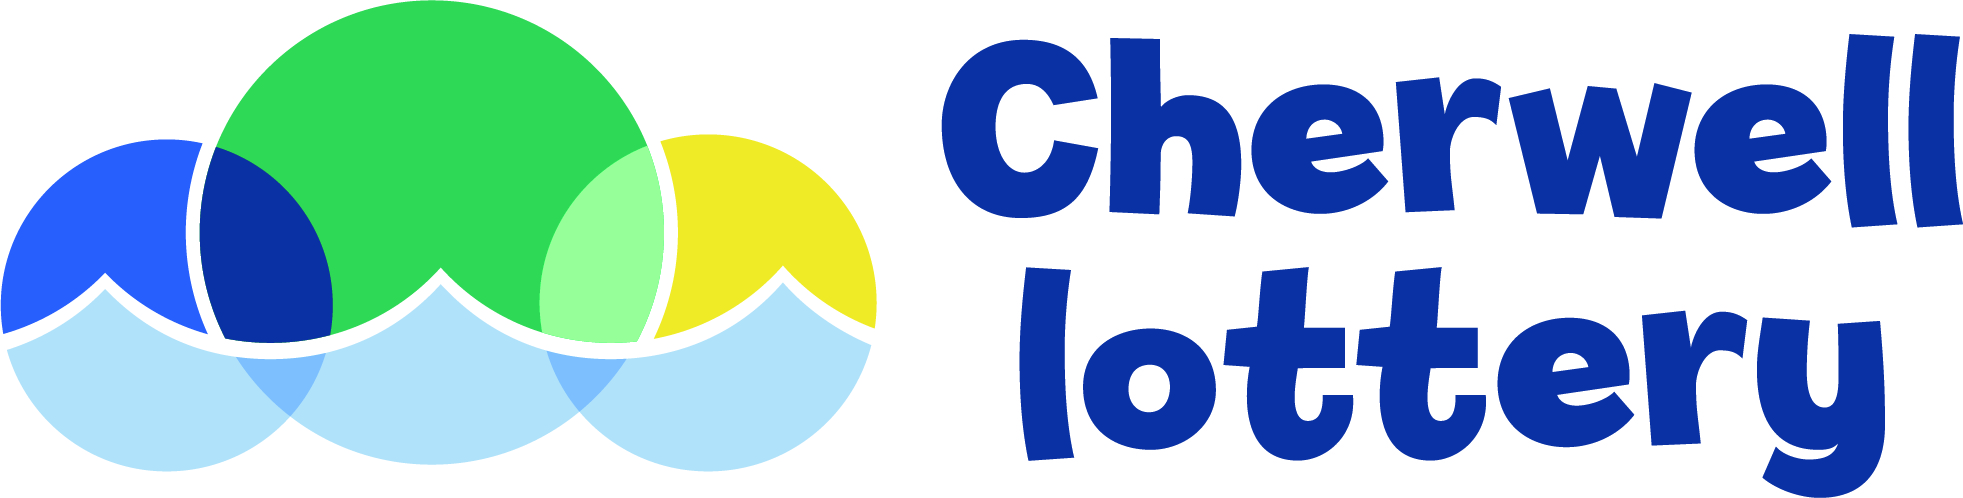 Lottery logo